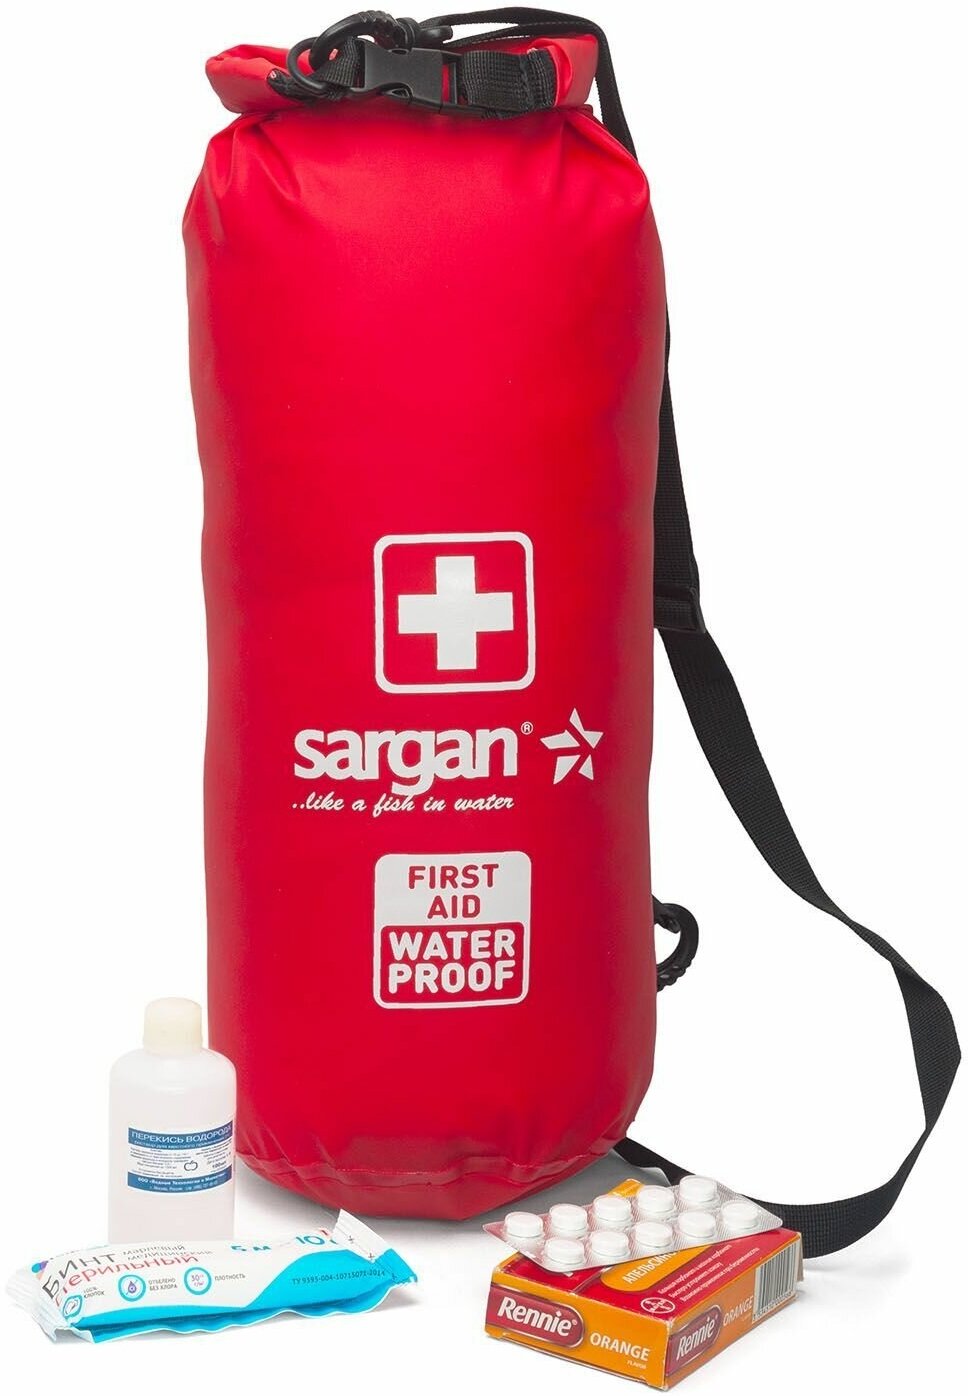 Аптечка на лямке через плечо влагозащитная SARGAN санитар объемный, 5 литров, гермомешок/гермосумка, красный ПВХ (Лекарства в комплект не входят)